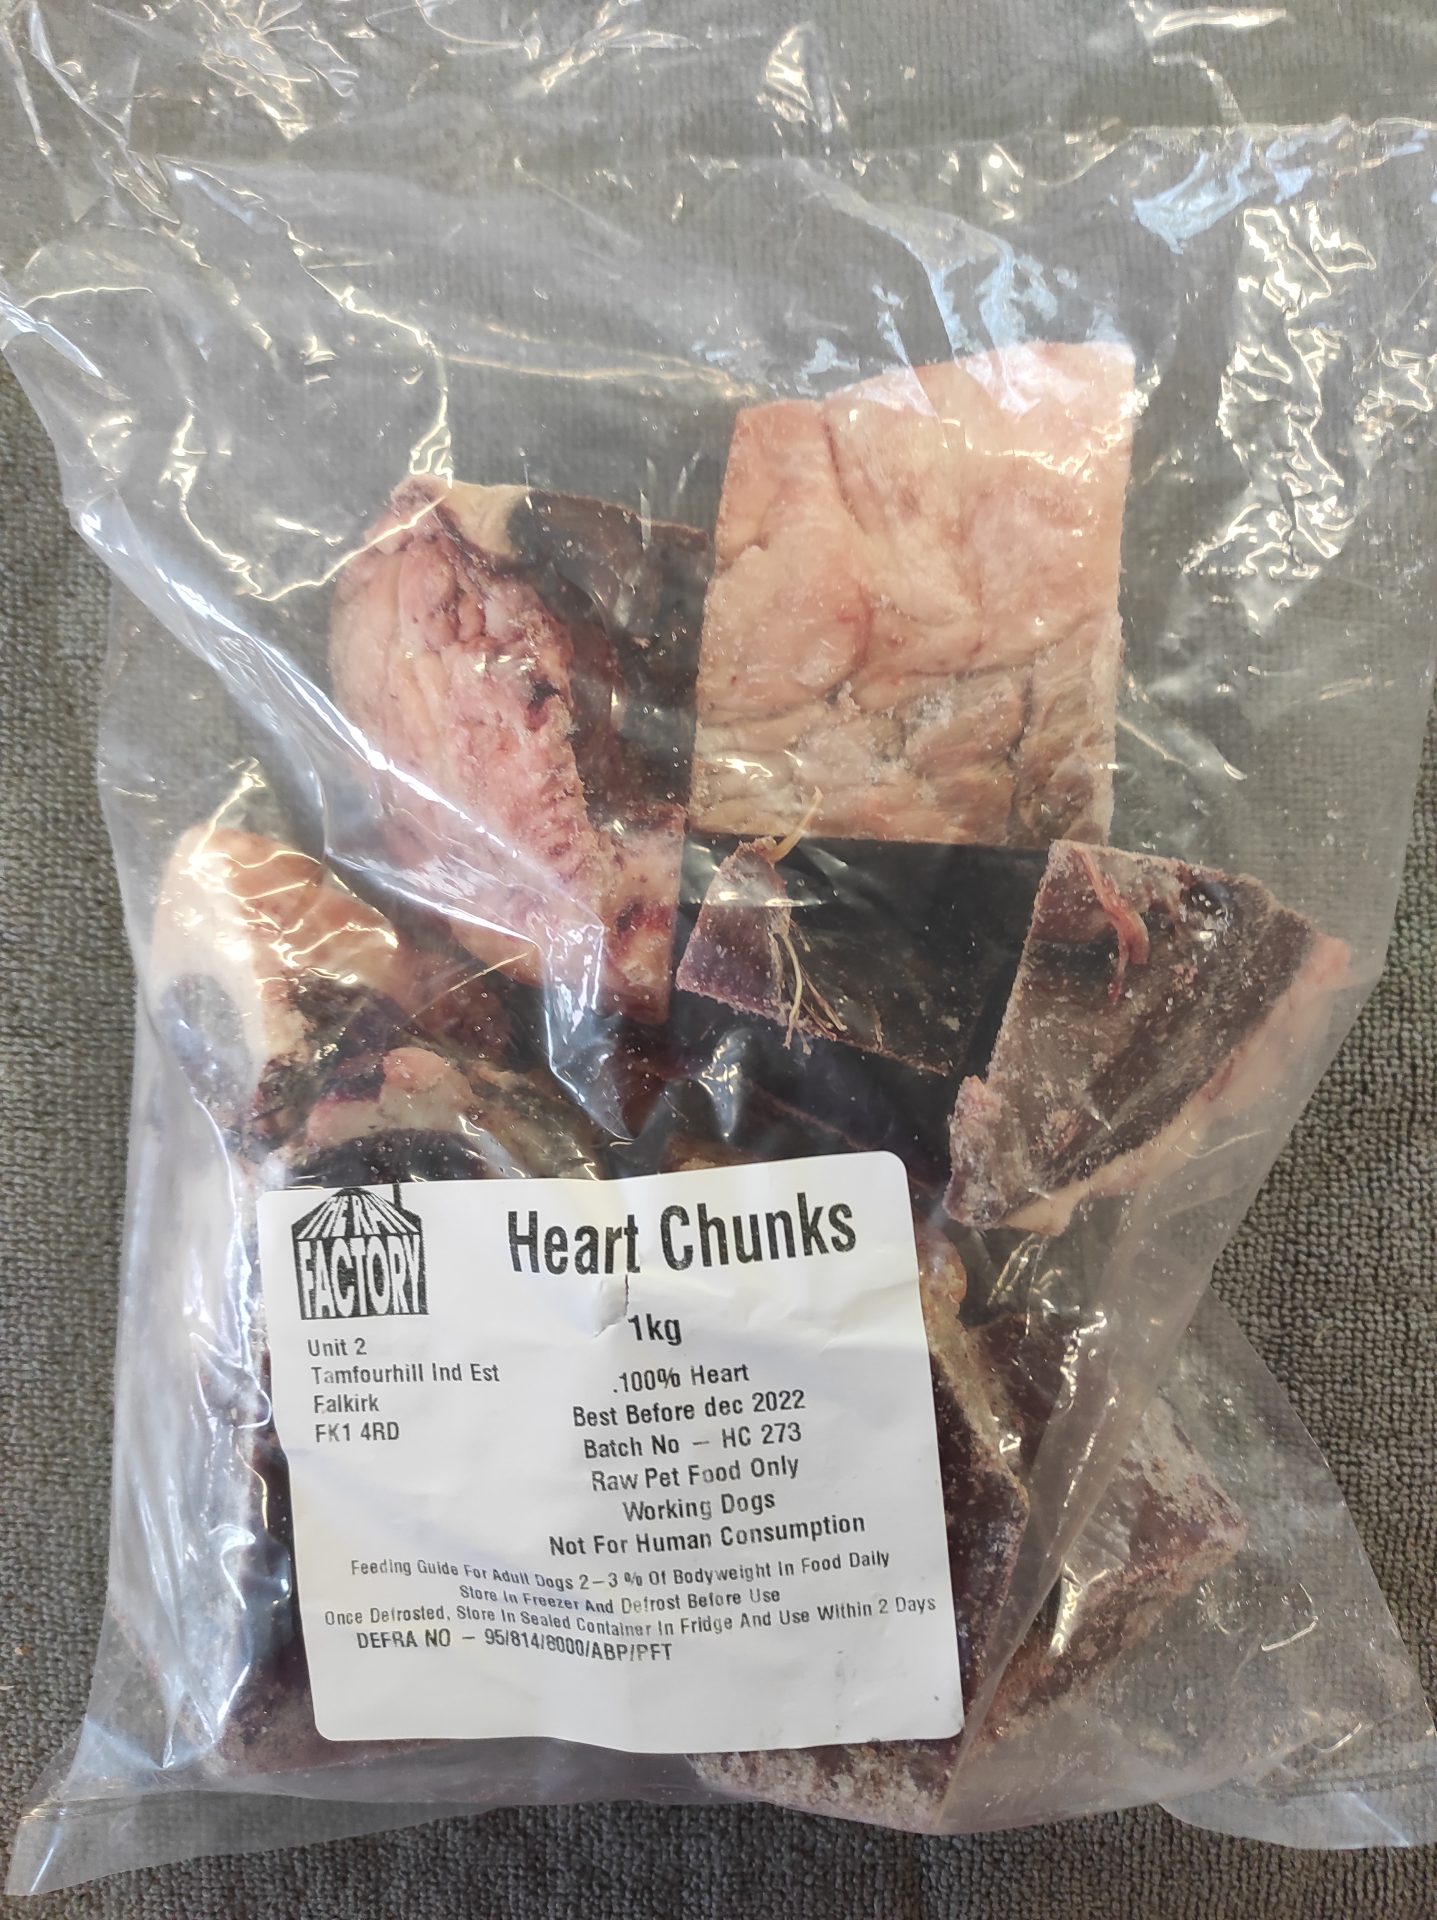 Heart chunks Beef